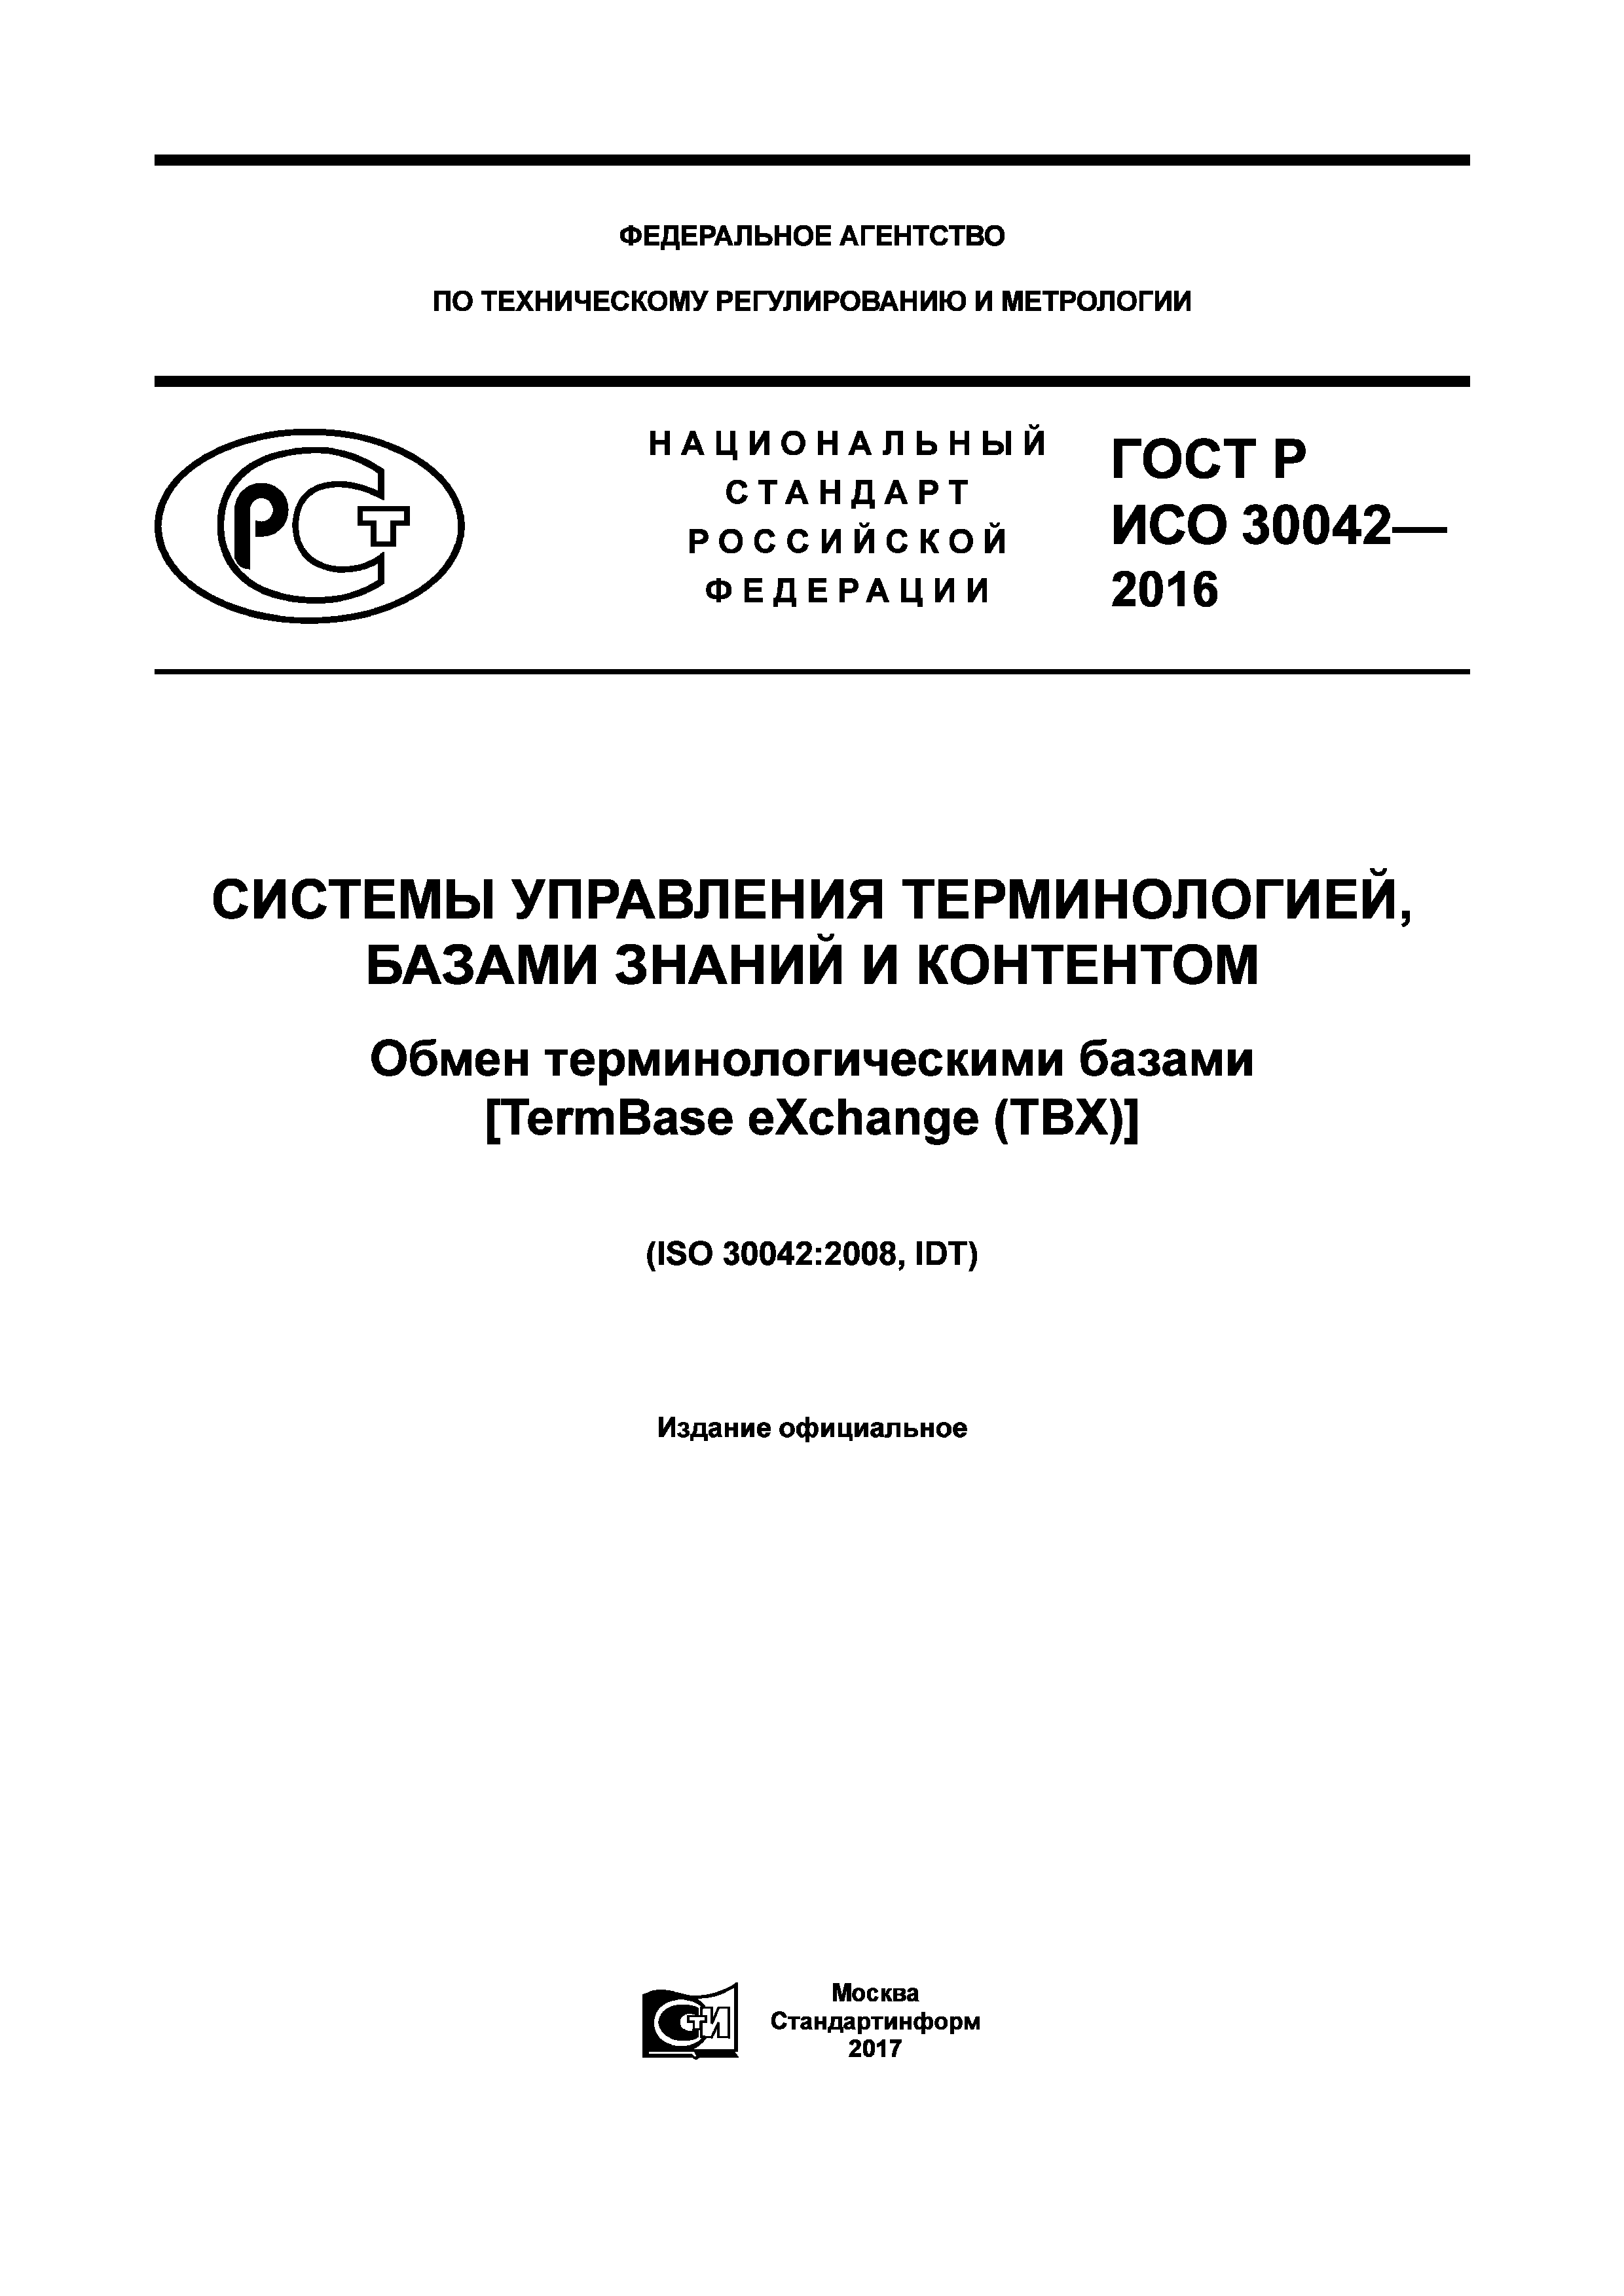 ГОСТ Р ИСО 30042-2016